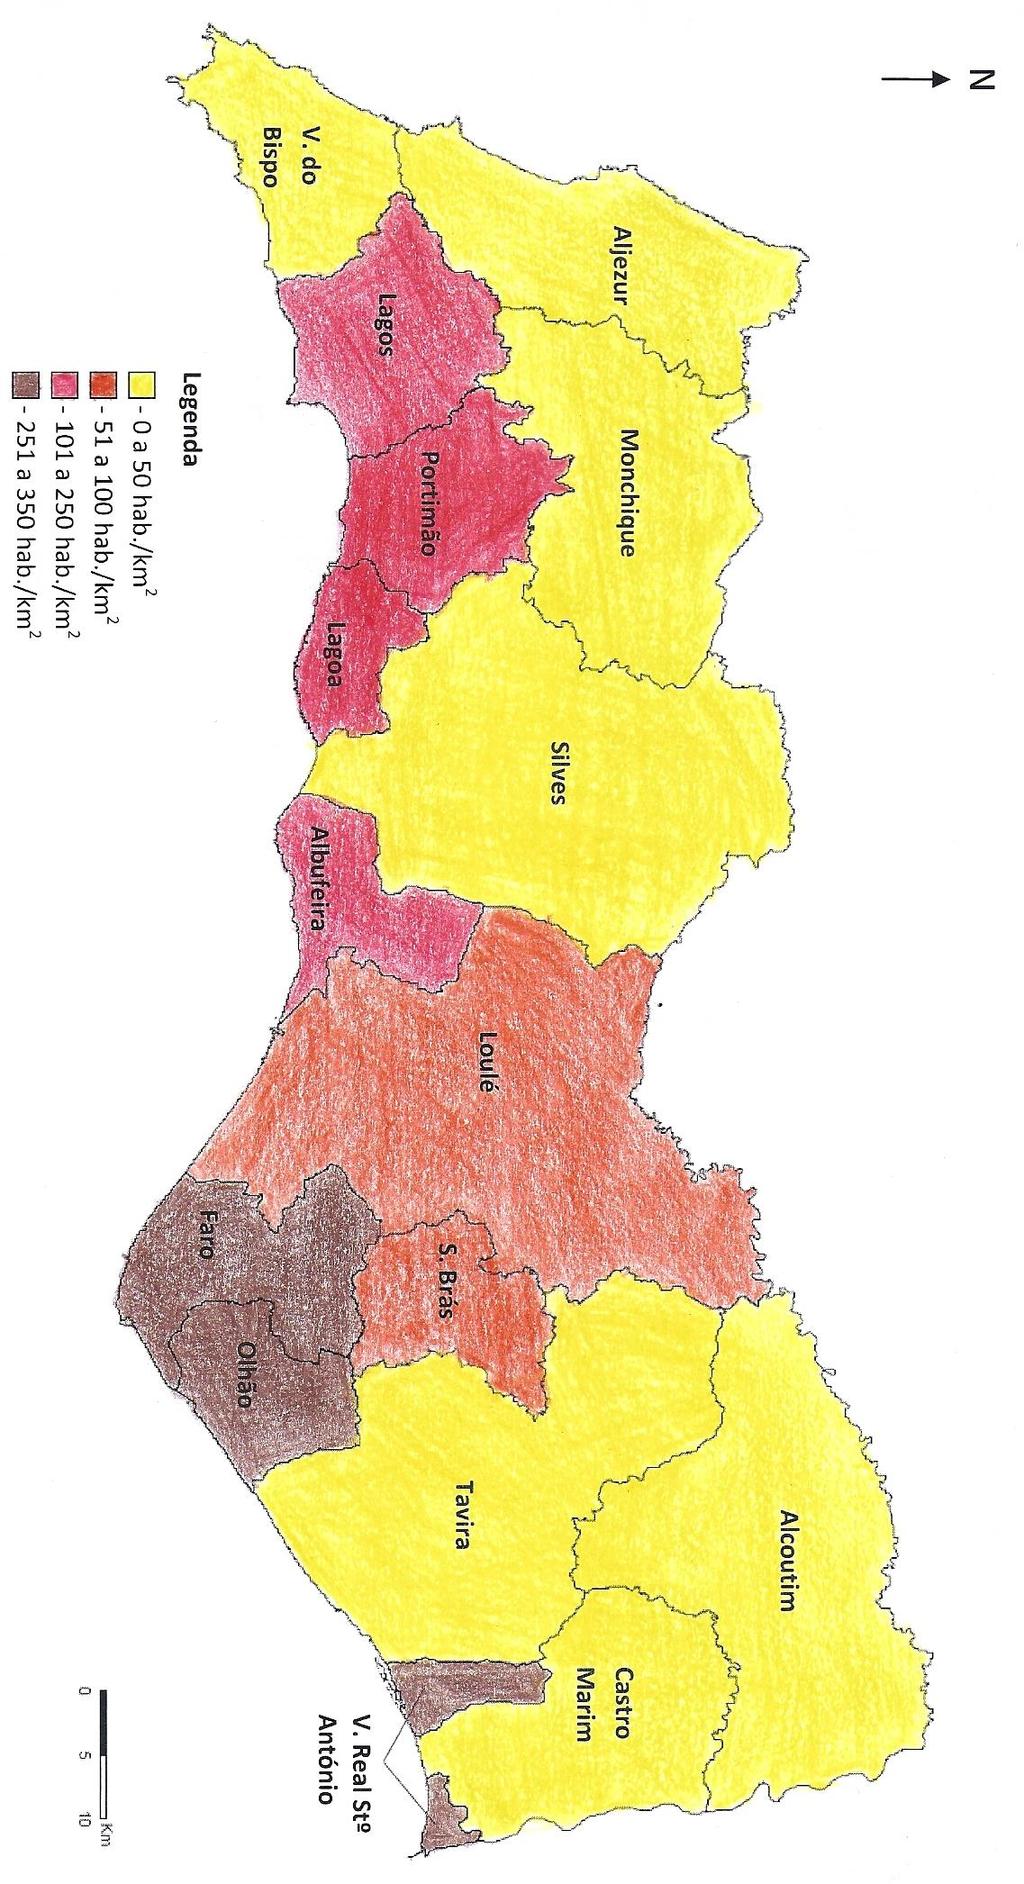 Os concelhos do Algarve com maior densidade populacional, em 2001, foram Olhão, V. Real Stº António e Faro, registando mais de 250 hab./km 2.